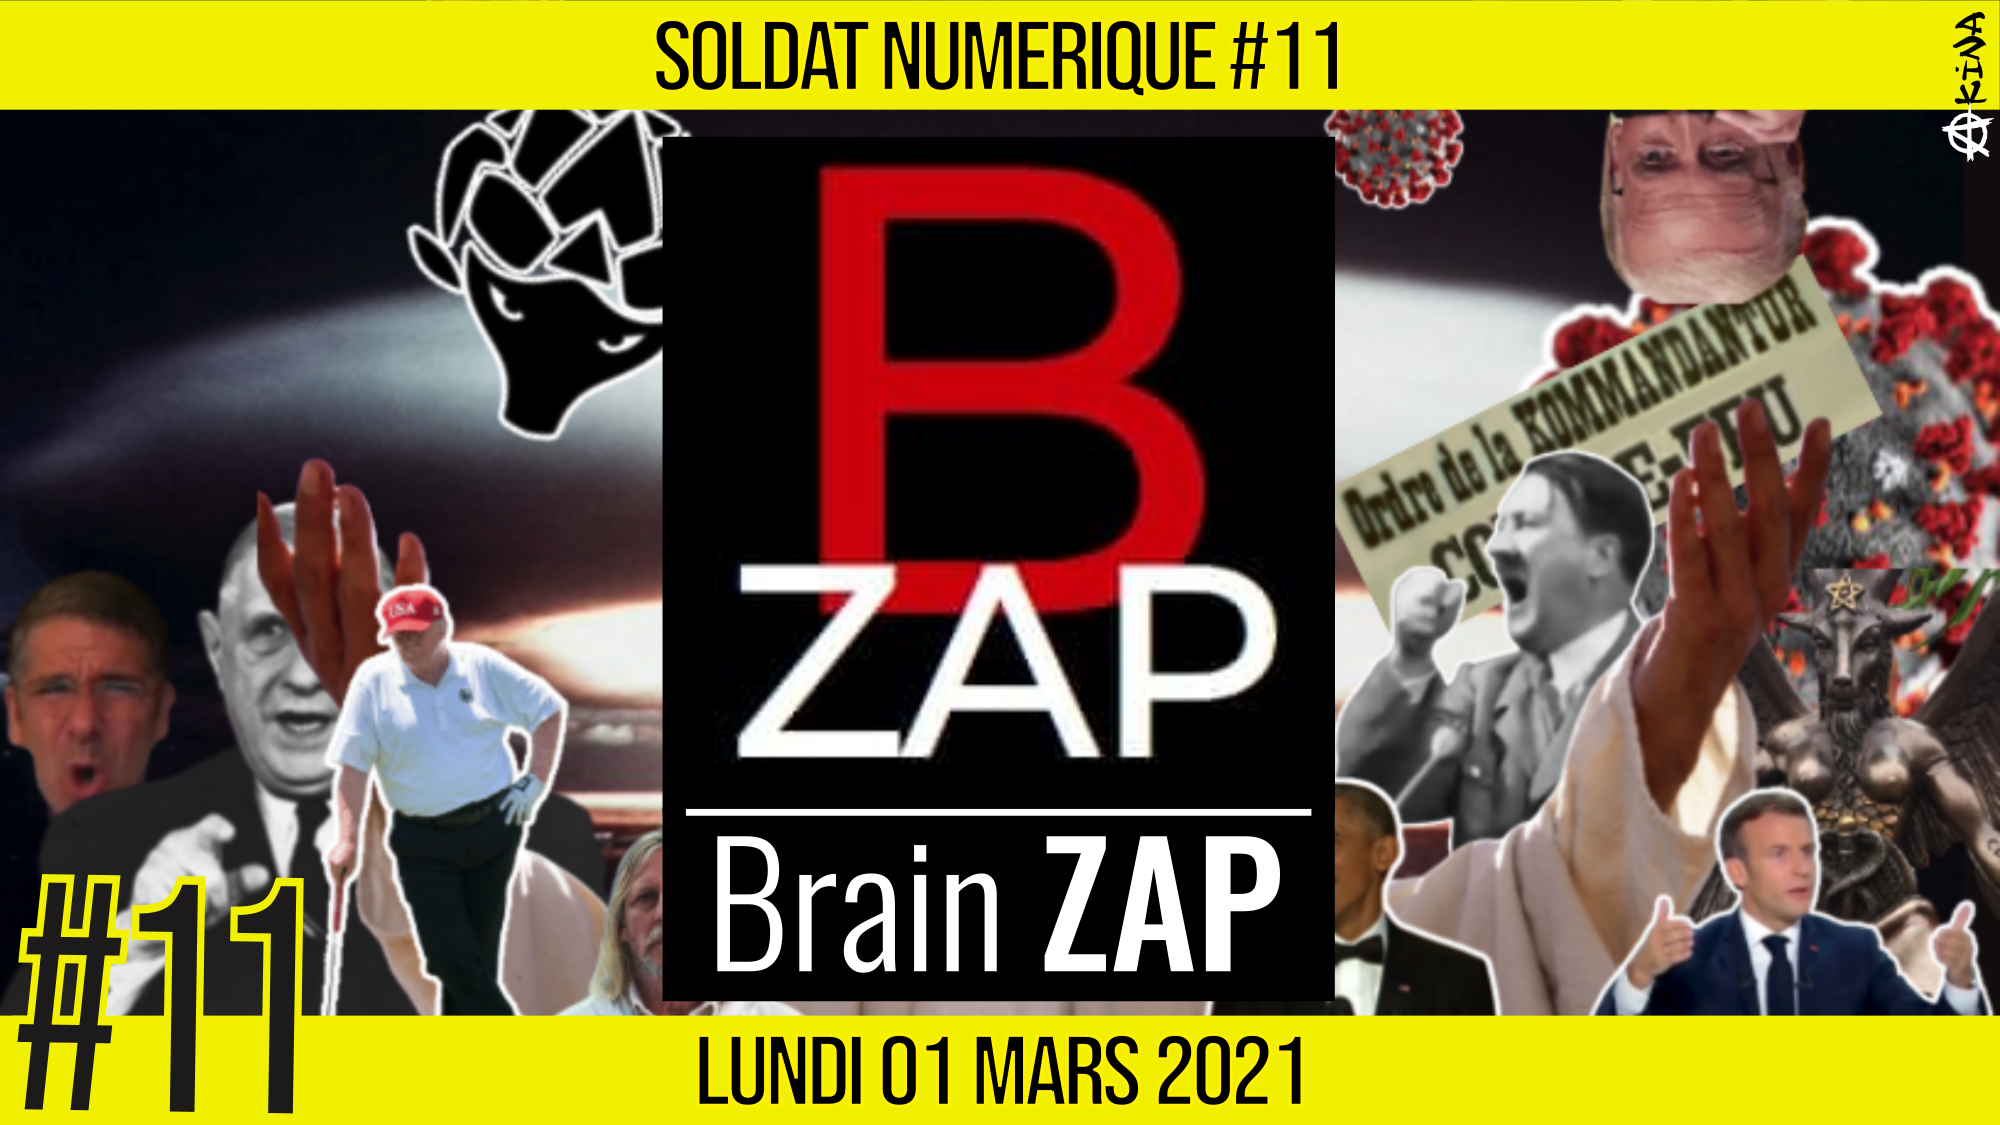 🥊 SOLDAT NUMÉRIQUE #11 🗣 BrainZap 🎯 Zapping Satyrique 📆 01-03-2021